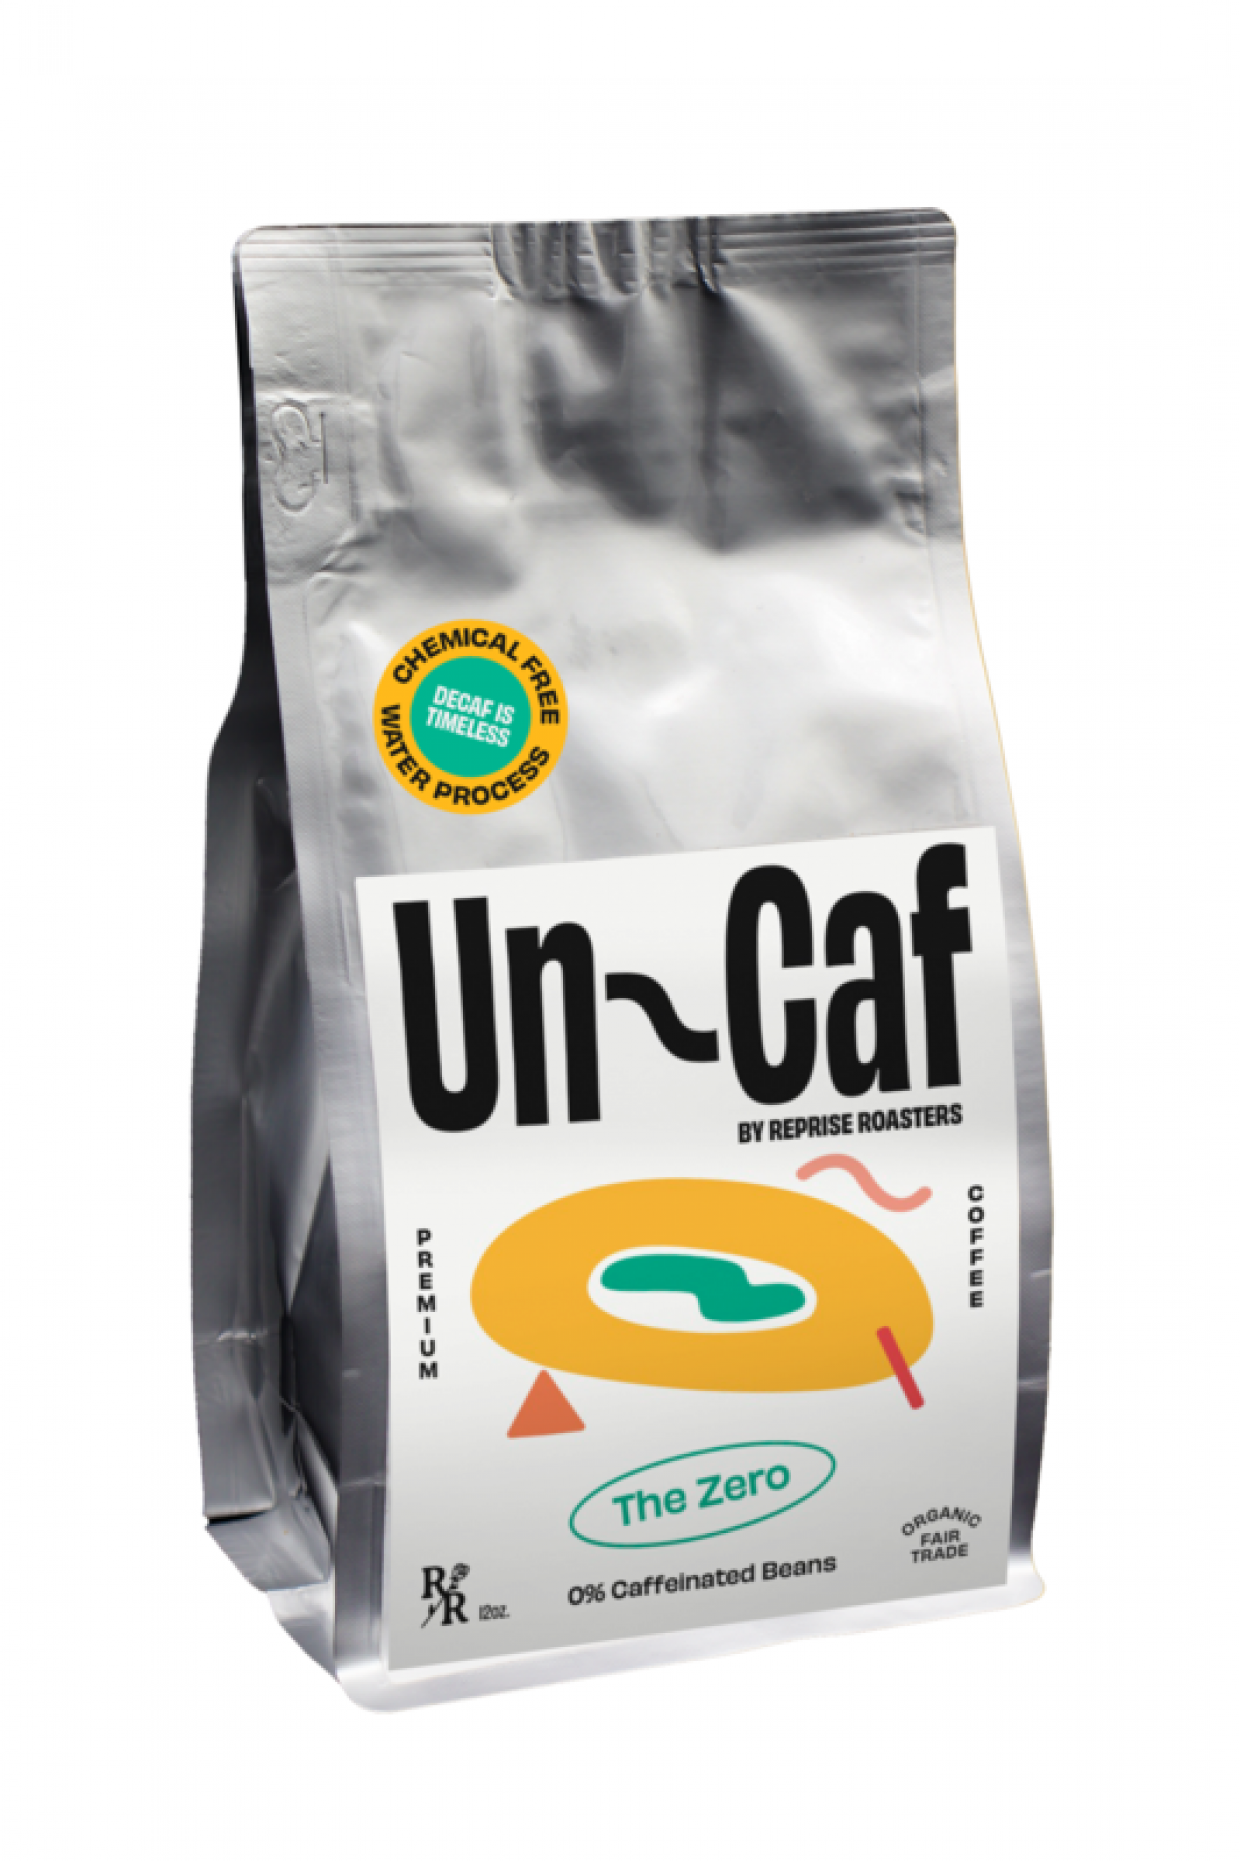 Uncaf - The Zero, 99.99% Caffeine Free 